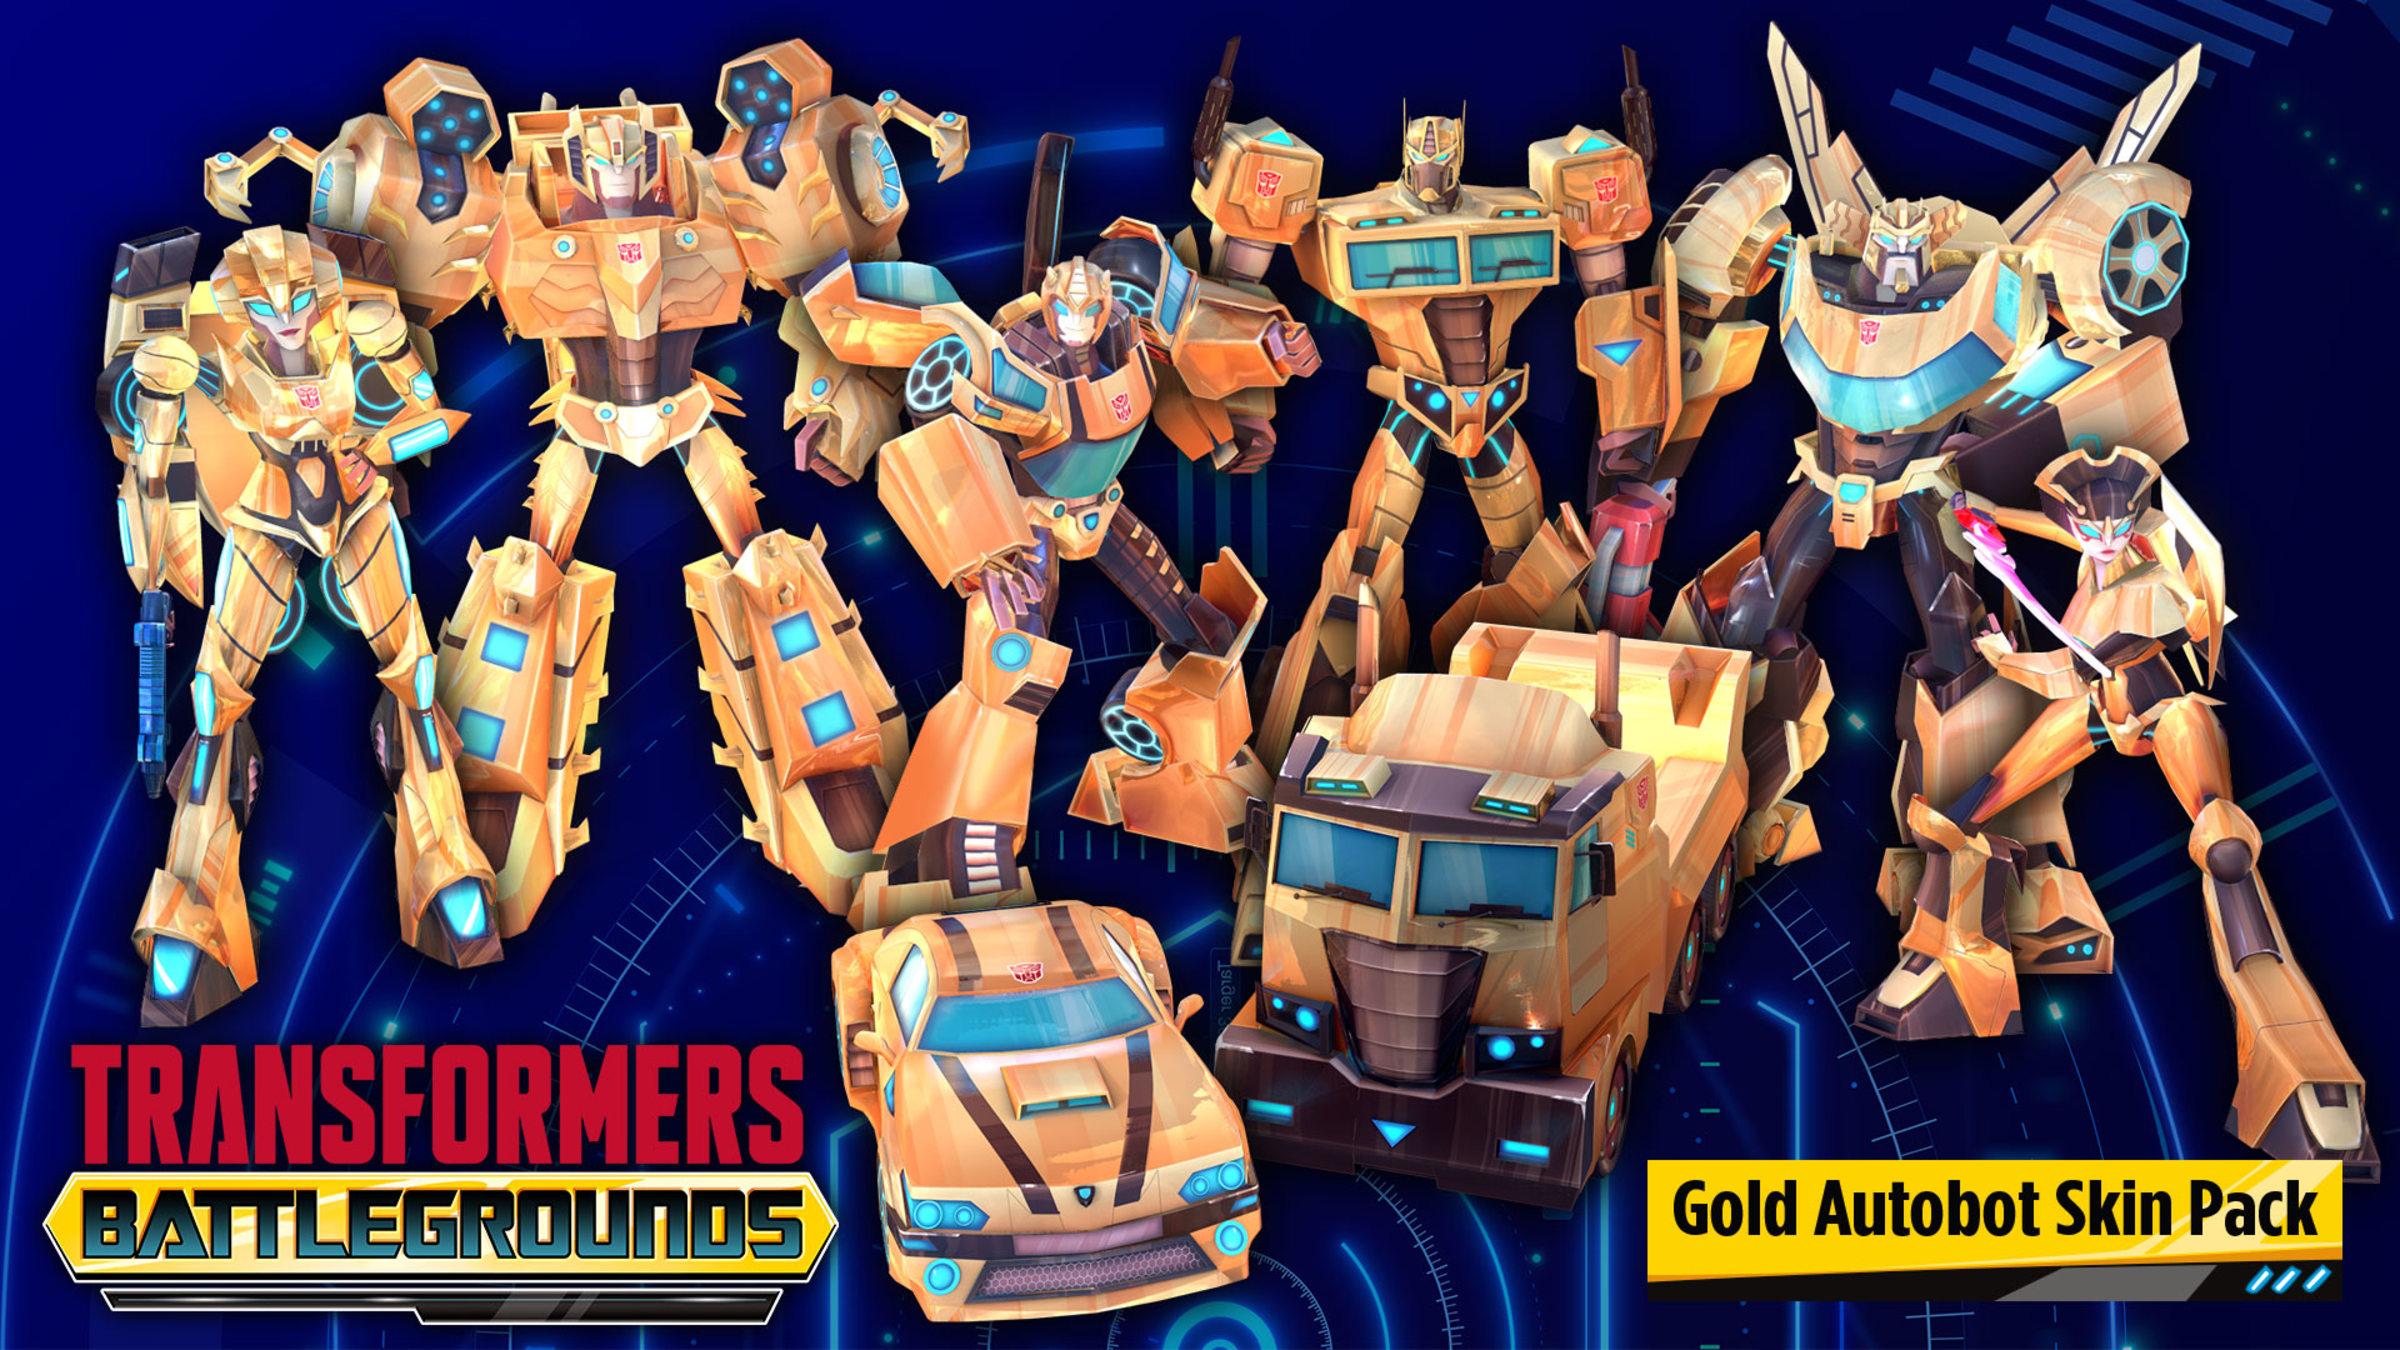 Transformers battlegrounds. Трансформеры Battlegrounds. Transformers Battlegrounds (2020). Transformers Battlegrounds Nintendo Switch. Transformers: Battlegrounds персонажи.